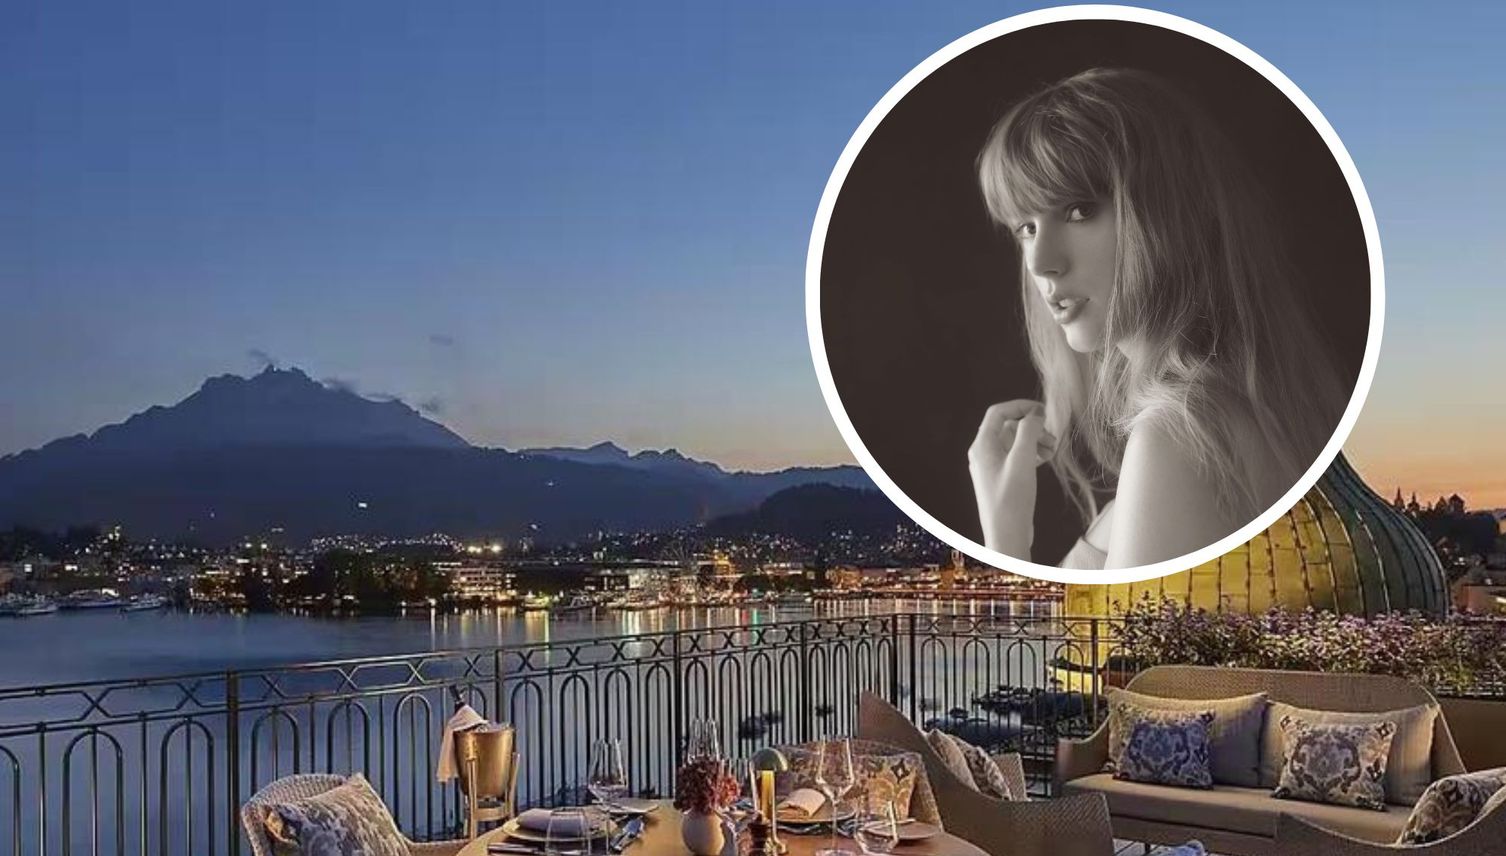 Übernachtet Taylor Swift in Luzern? Gerüchte verdichten sich